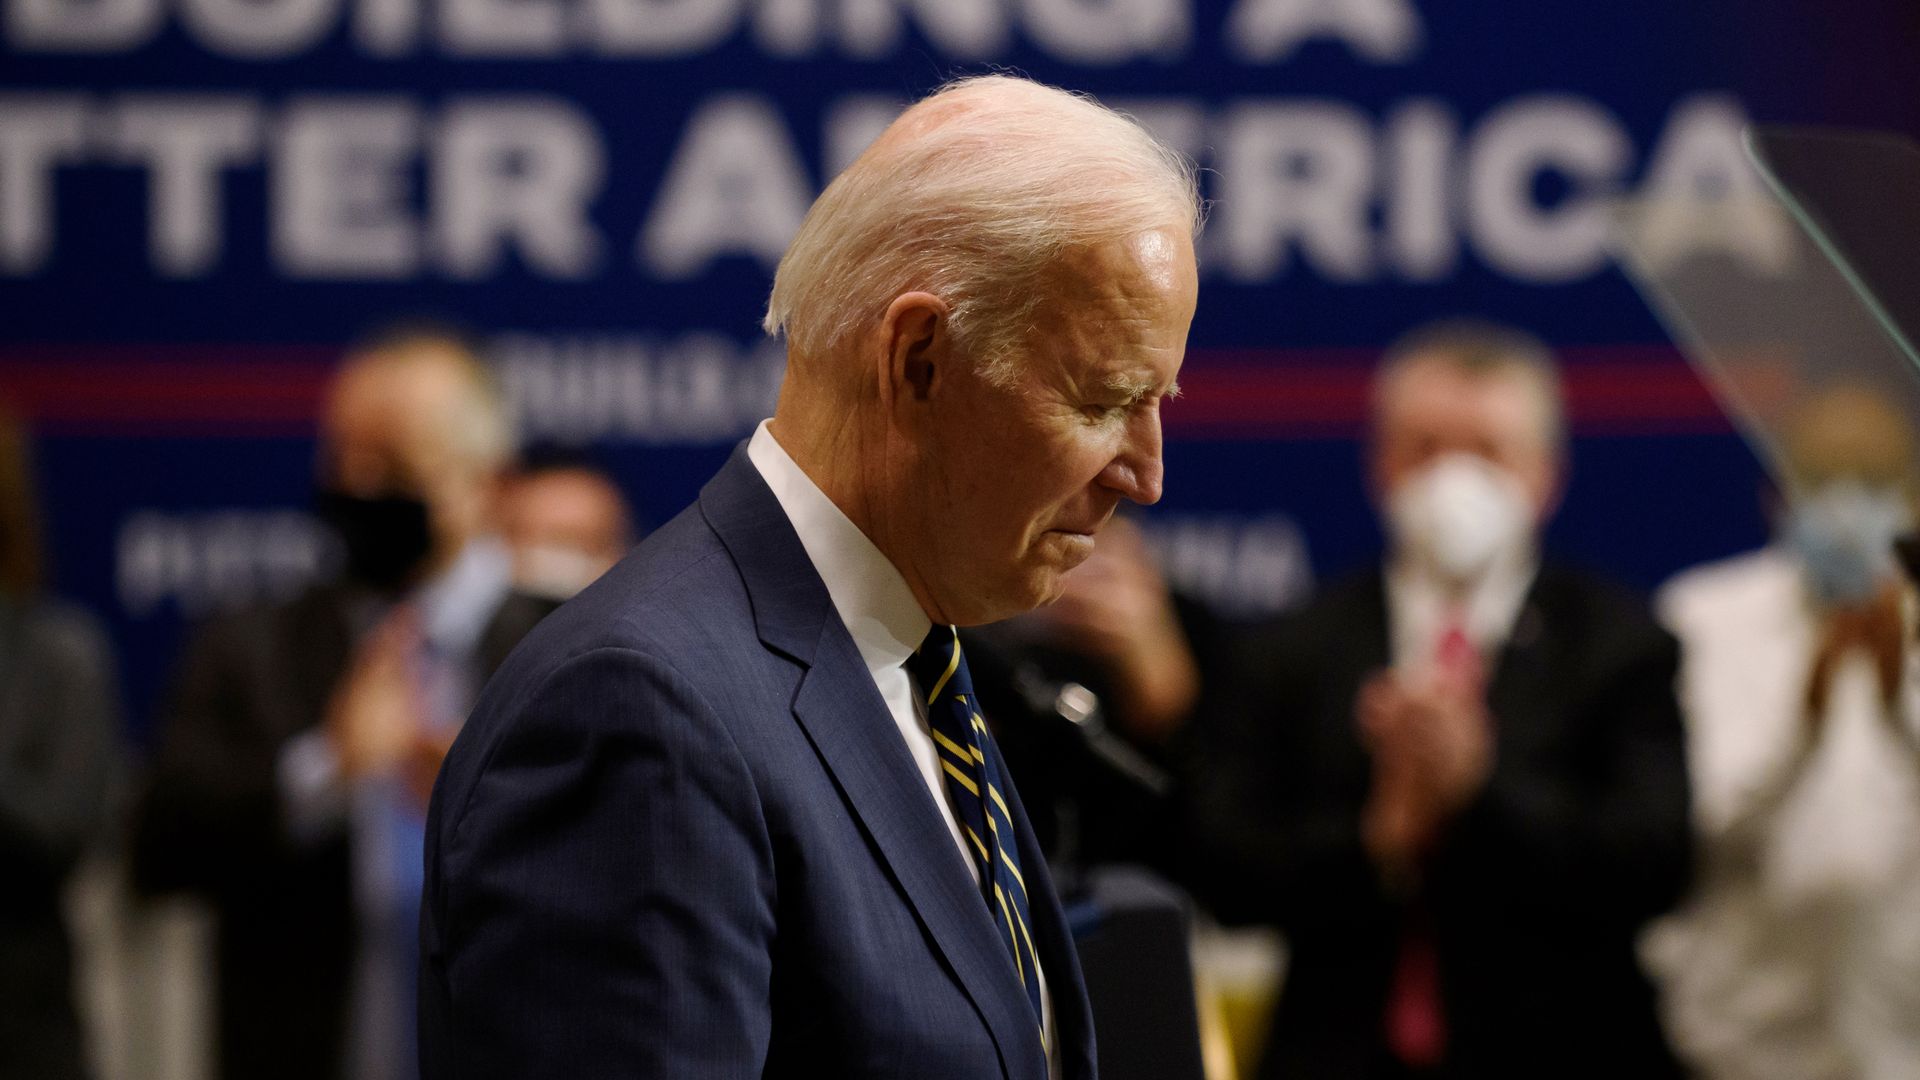 Photo of Joe Biden's side profile as he looks down 